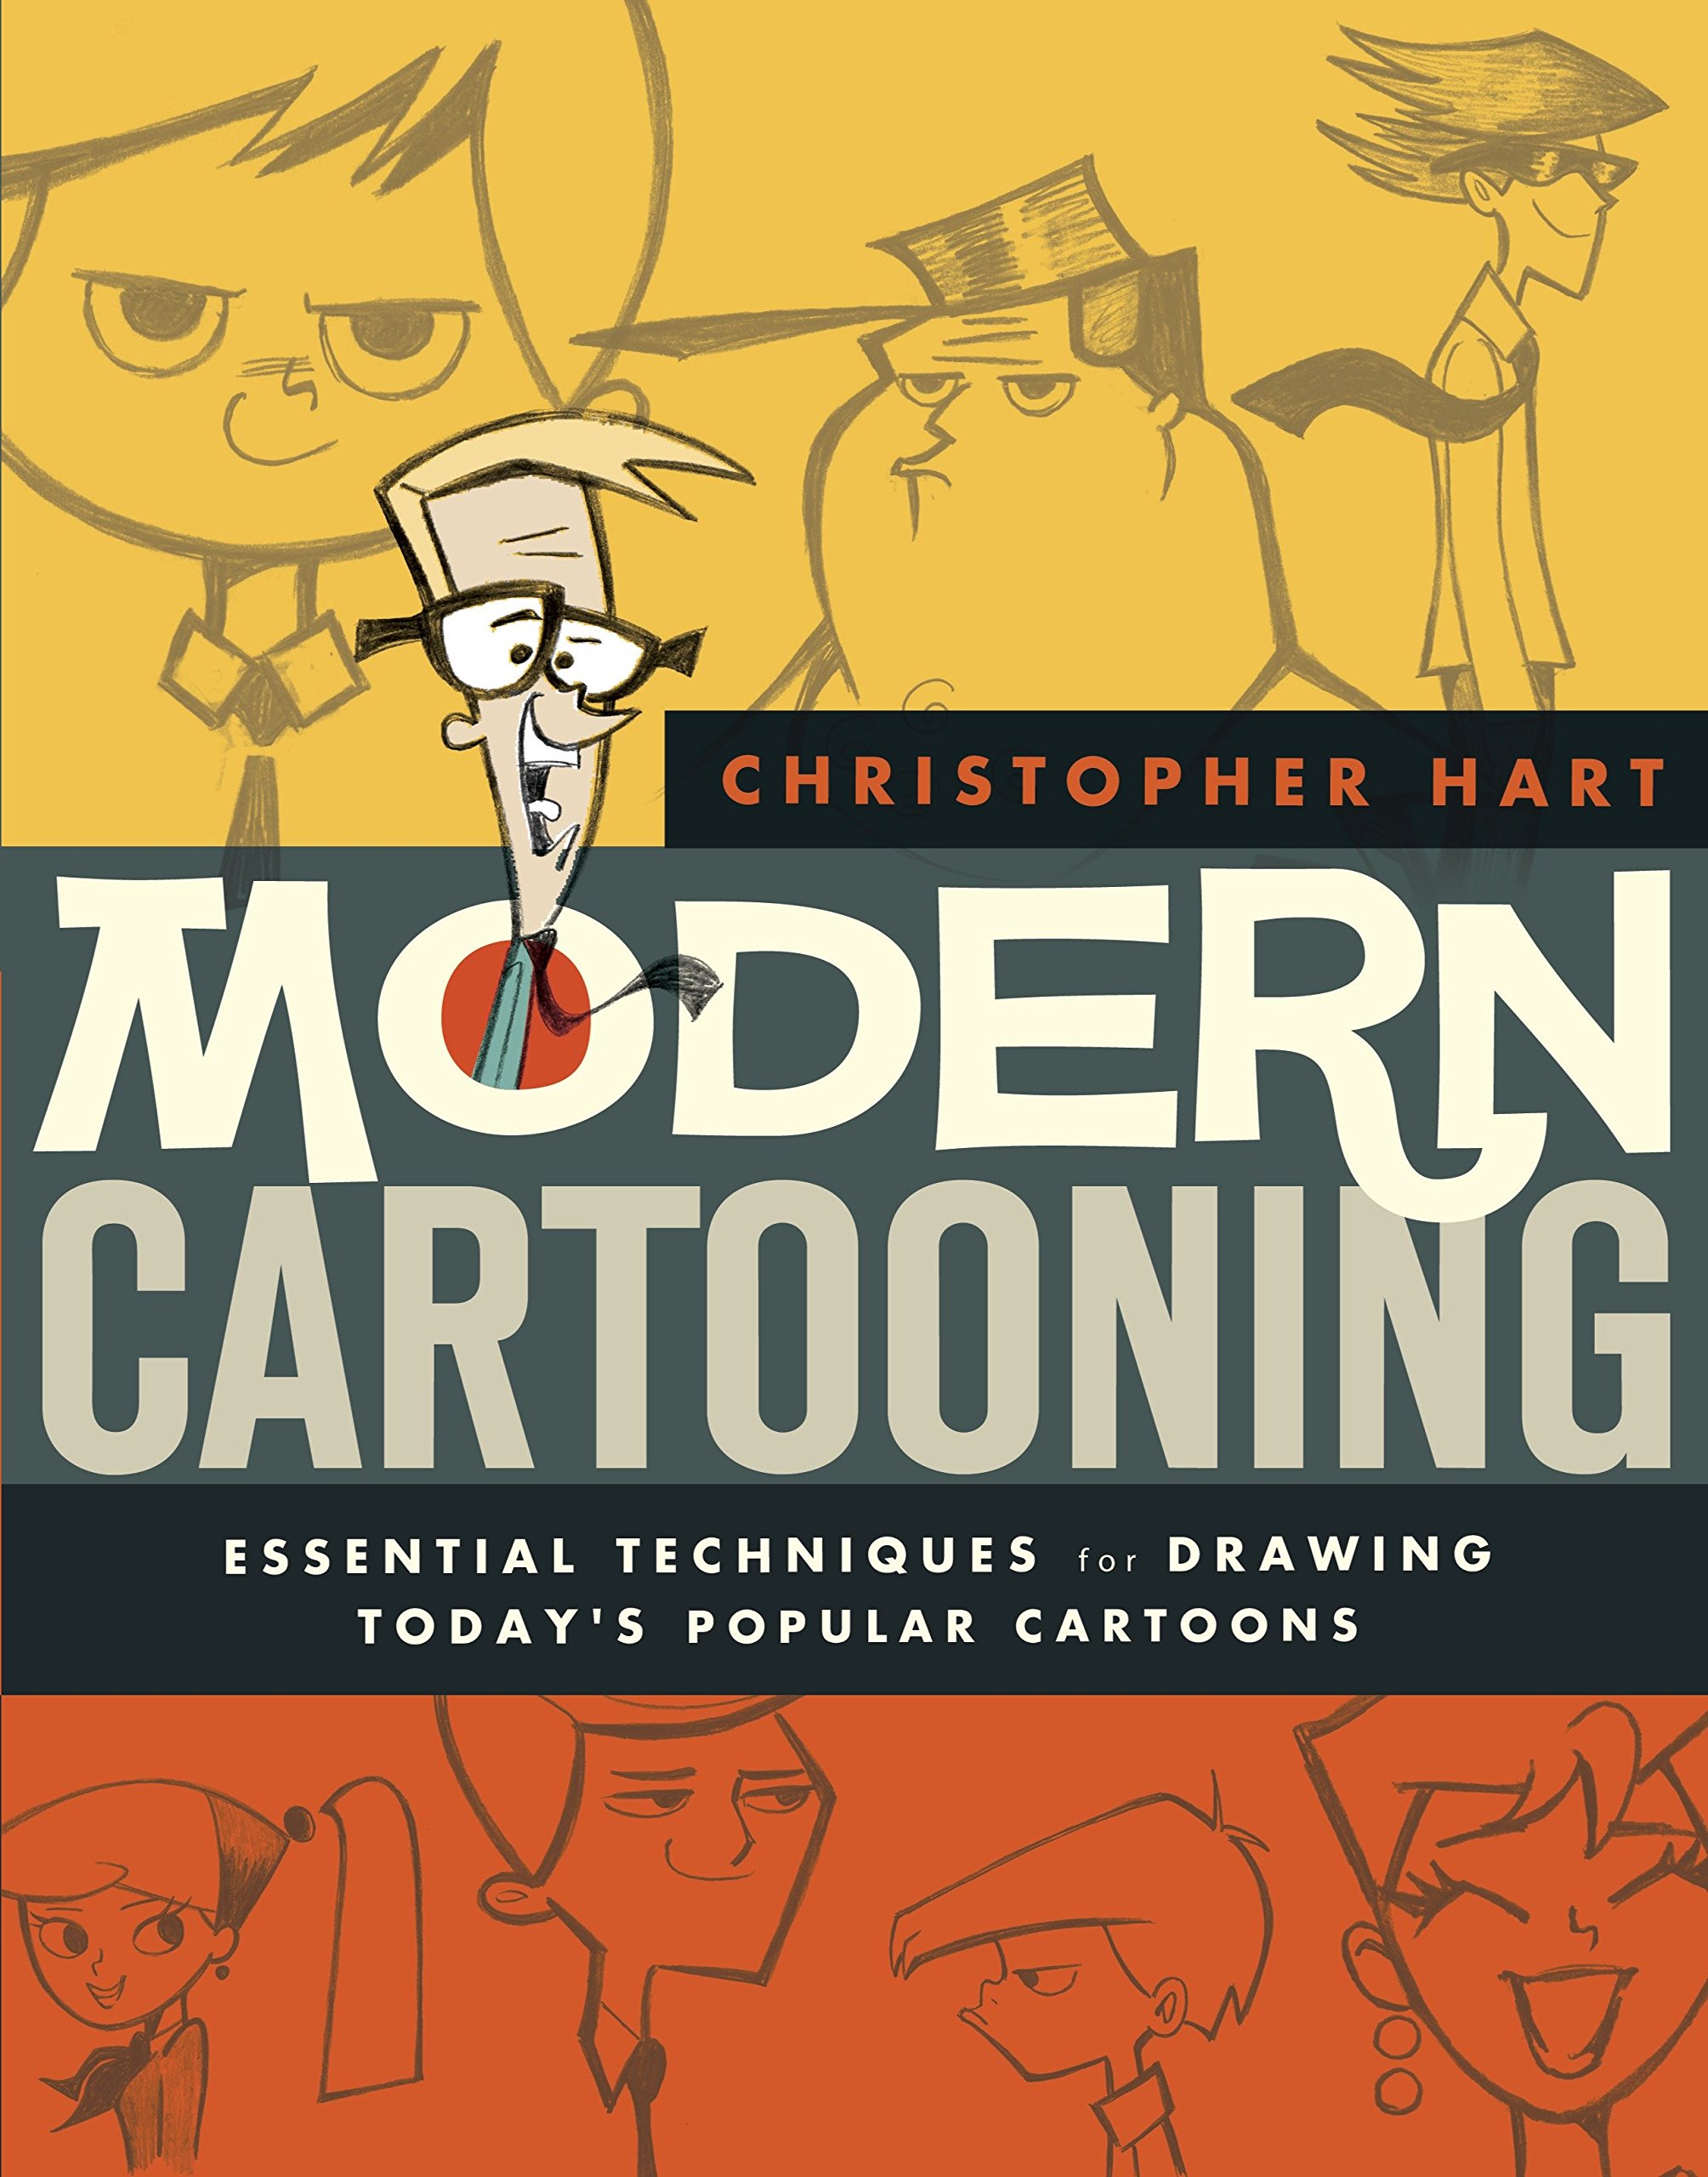 christopher hart modern cartooning pdf reader